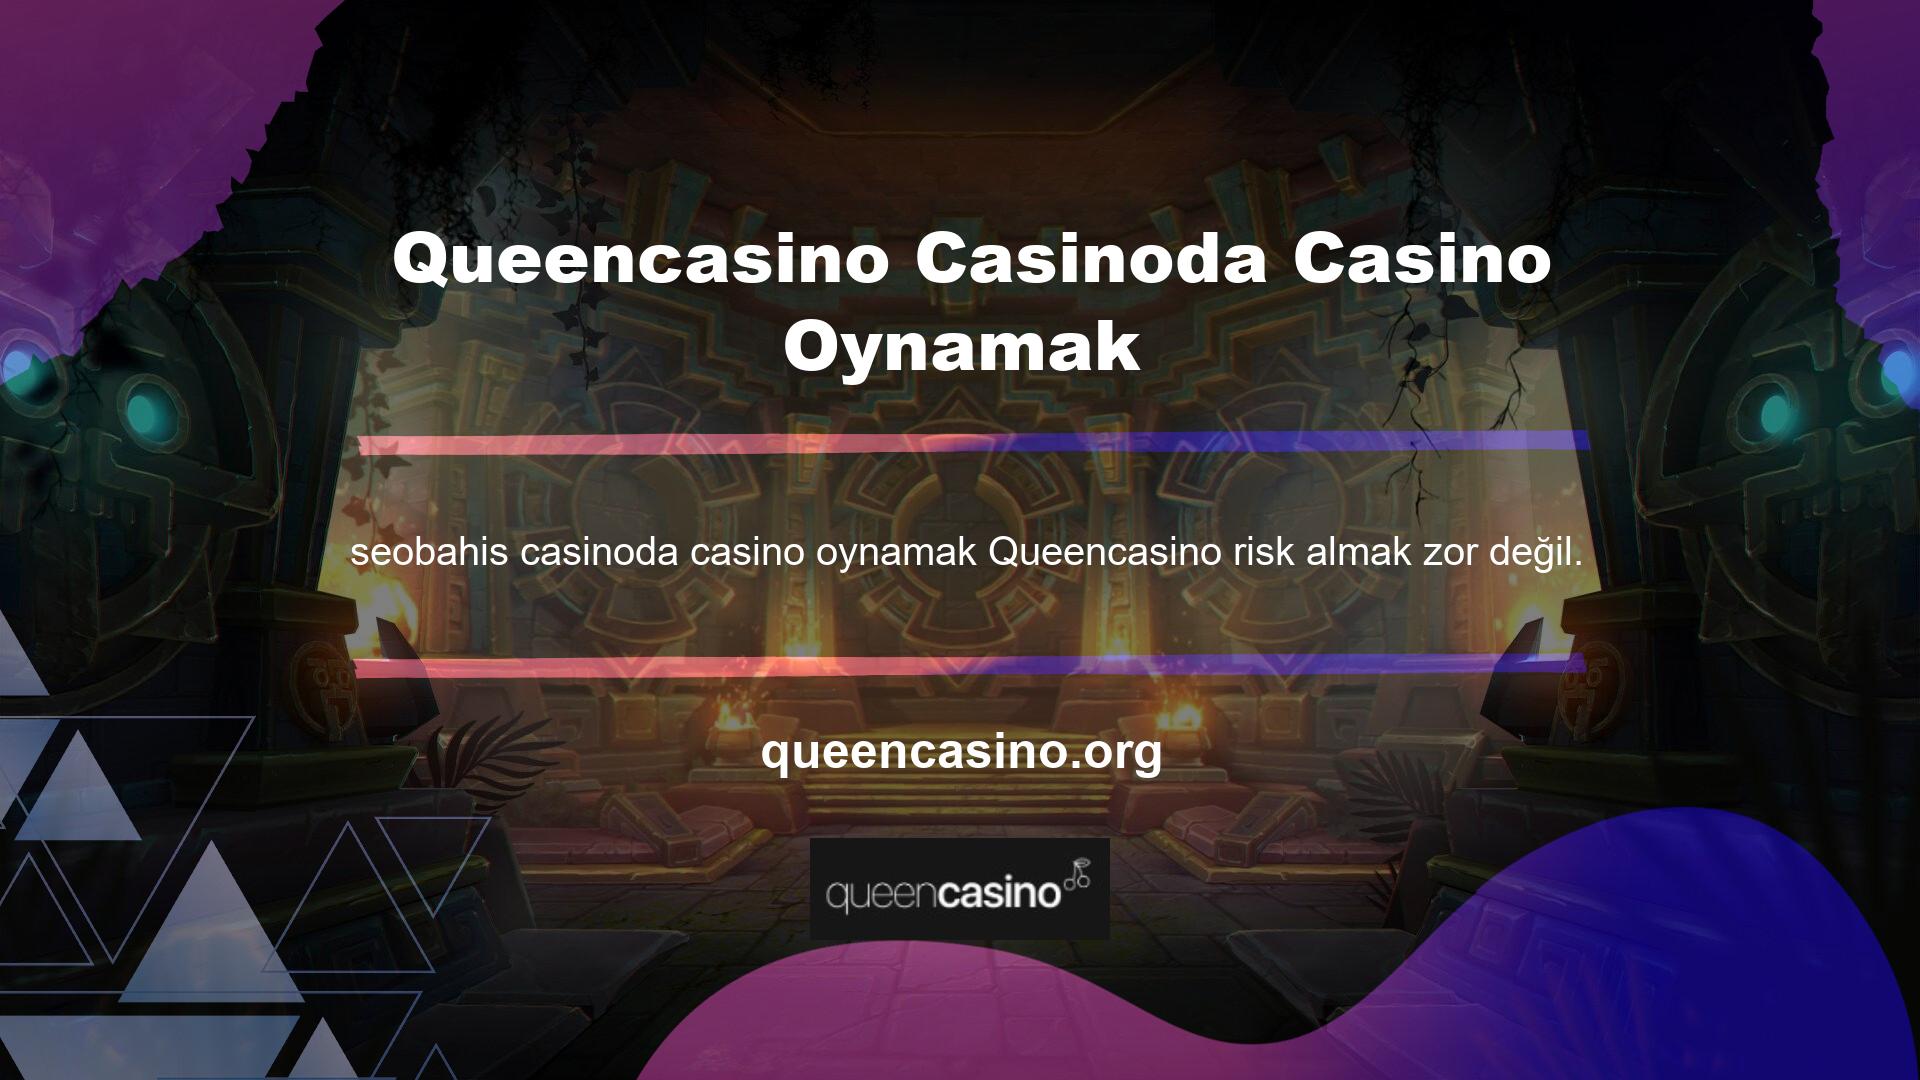 Queencasino casino bonusu kullanarak başarı şansınızı artırabilir ve sitedeki eylemlerinizde daha cesur olabilirsiniz